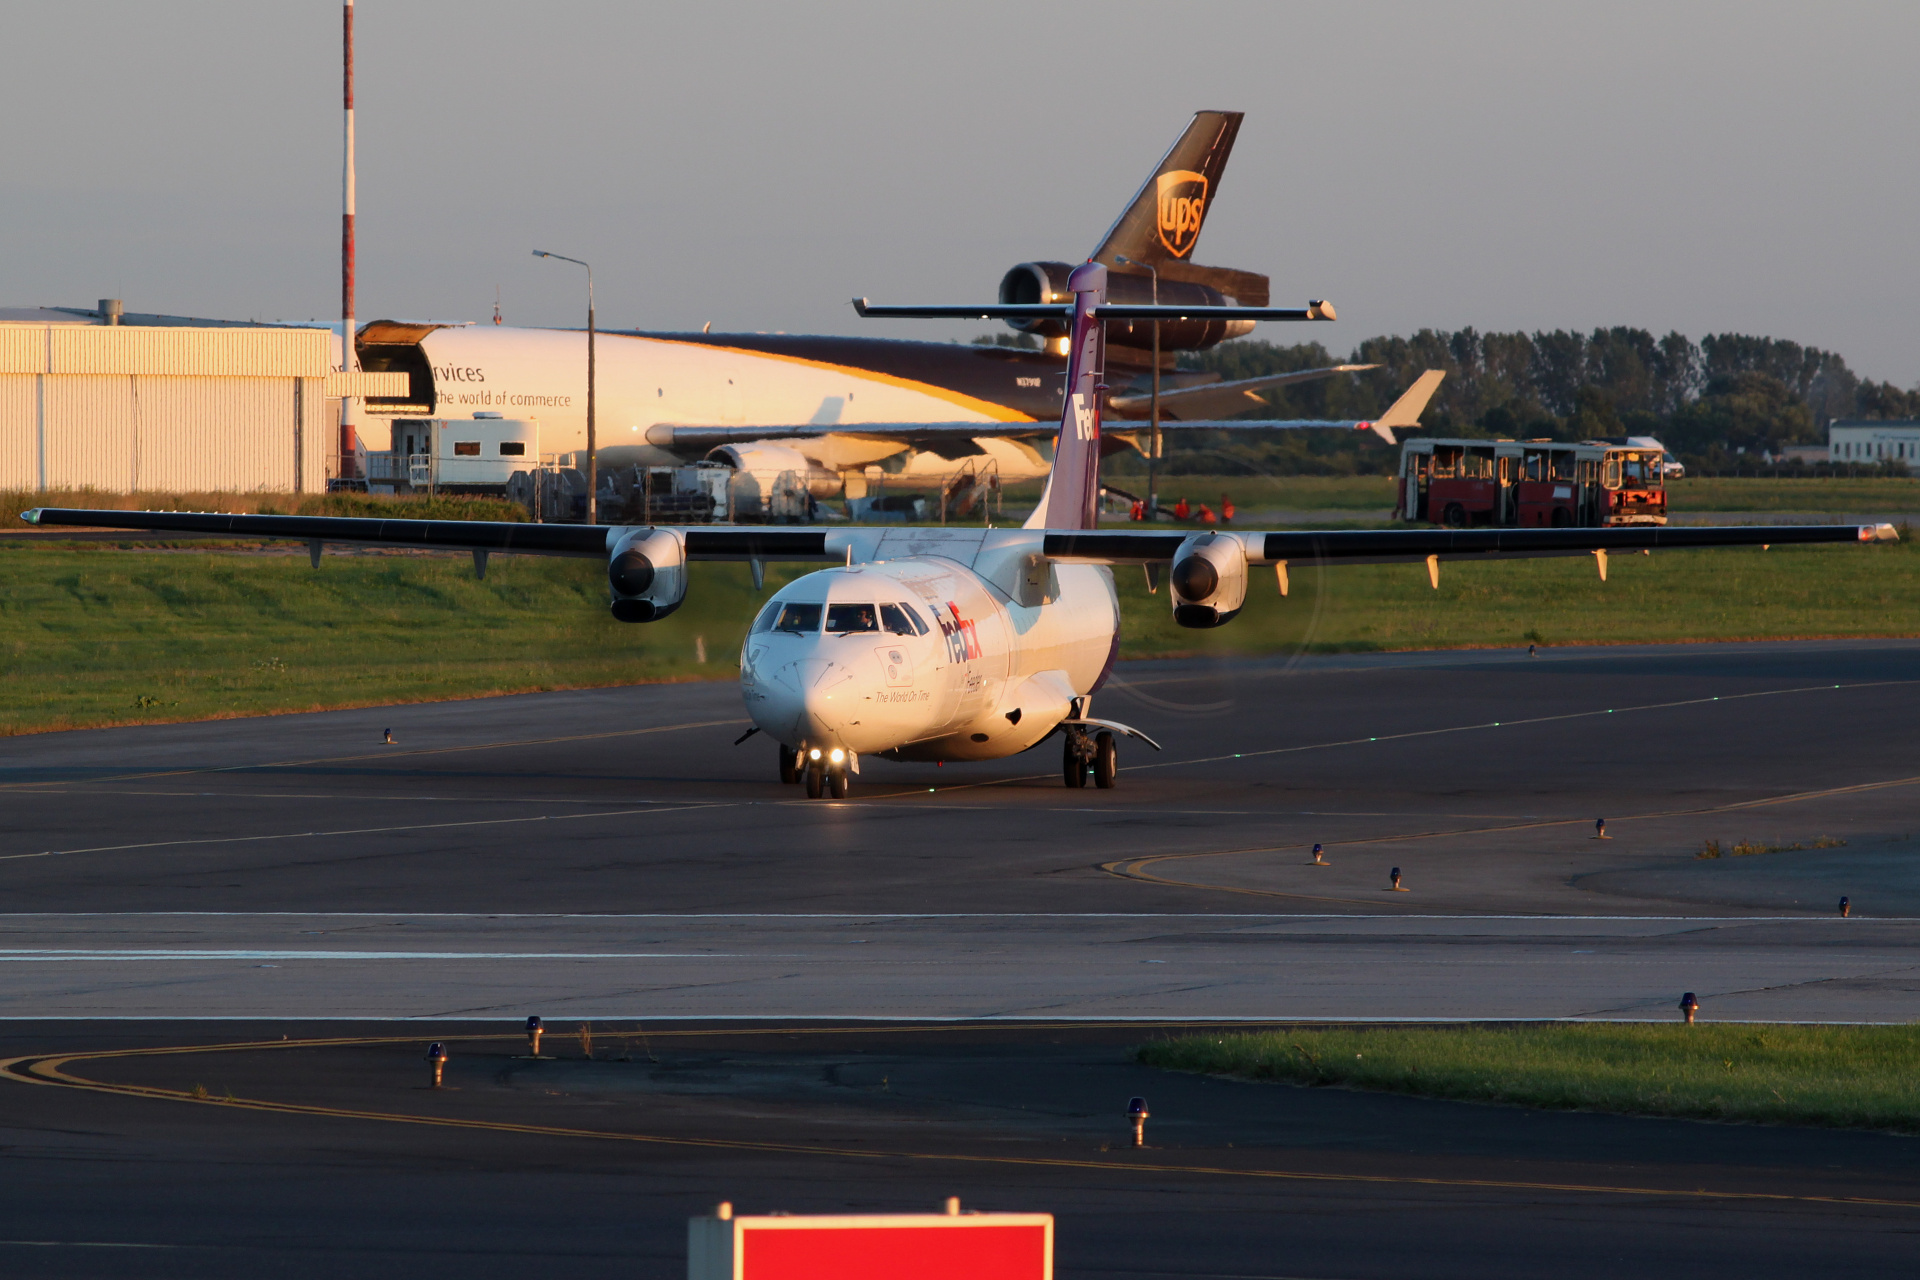 EI-FXH, FedEx (Aircraft » EPWA Spotting » ATR 72 » FedEx)